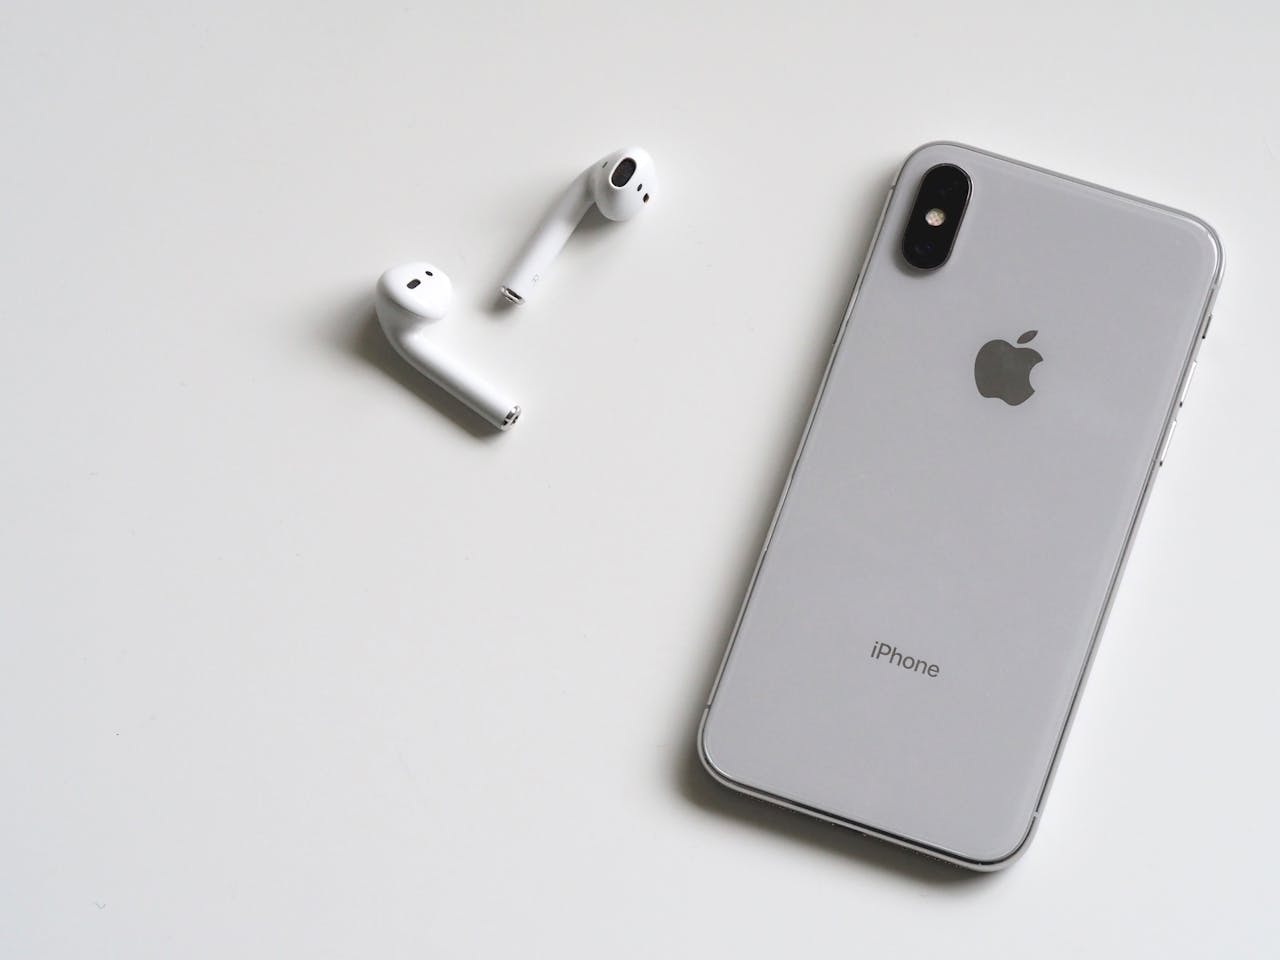 Cuffie Bluetooth ottimizzate per iPhone: design elegante e audio eccezionale per un'esperienza di ascolto superiore